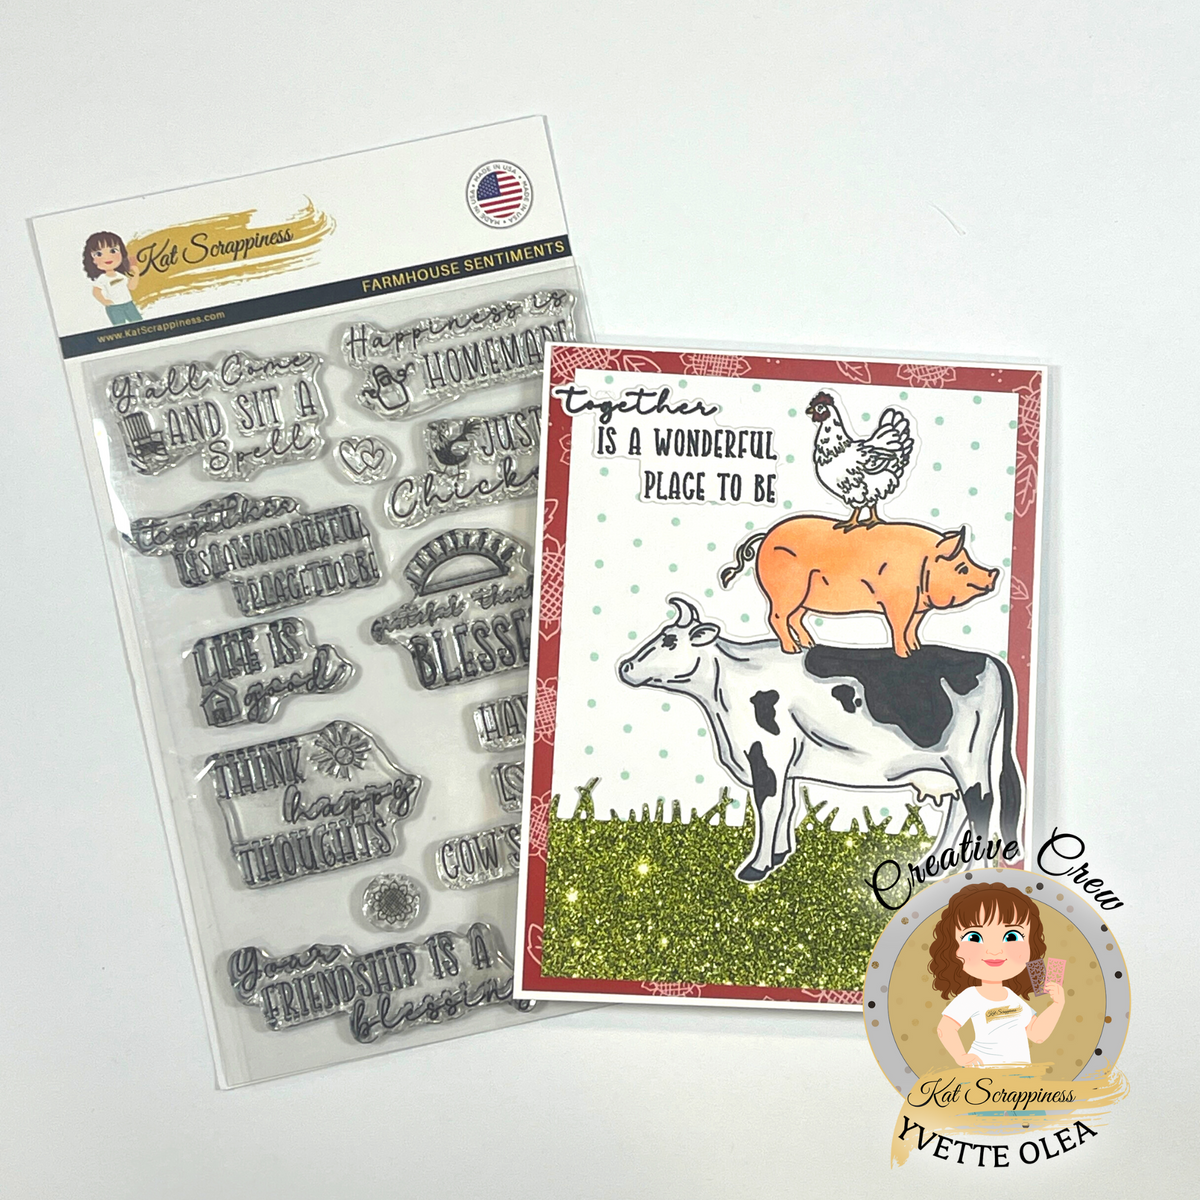 Farmhouse 6x8 Stamp Set